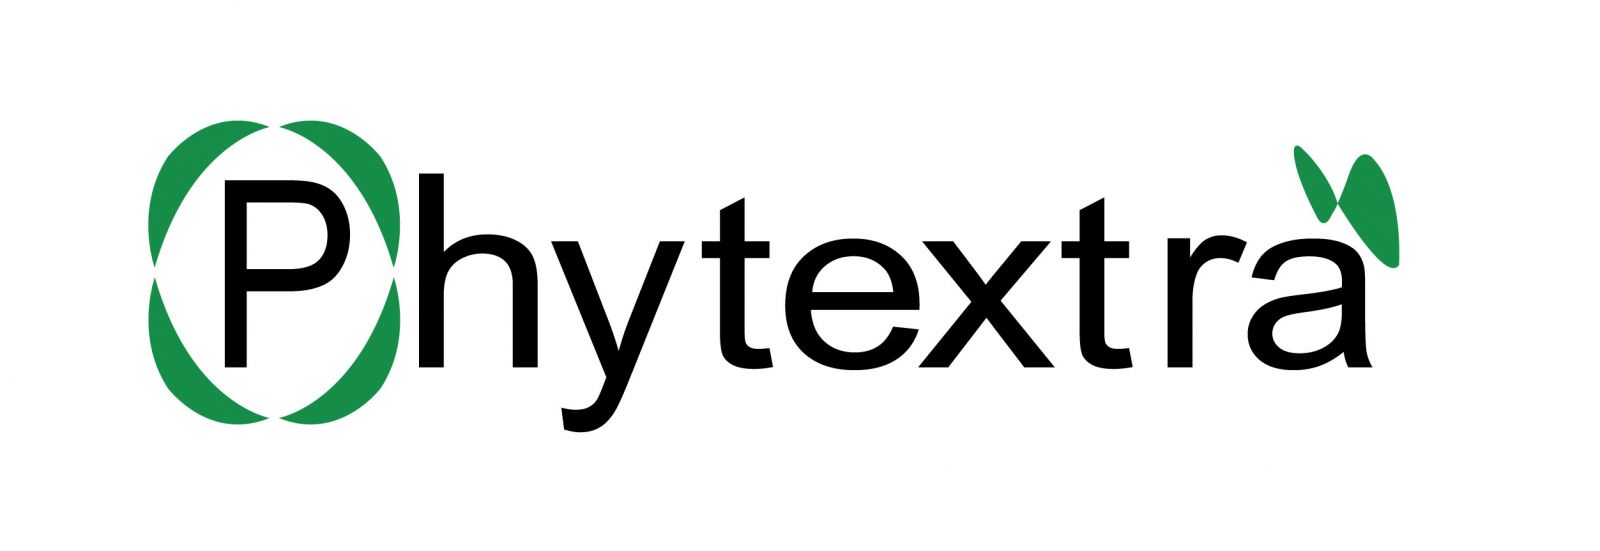 PHYTEXTRA